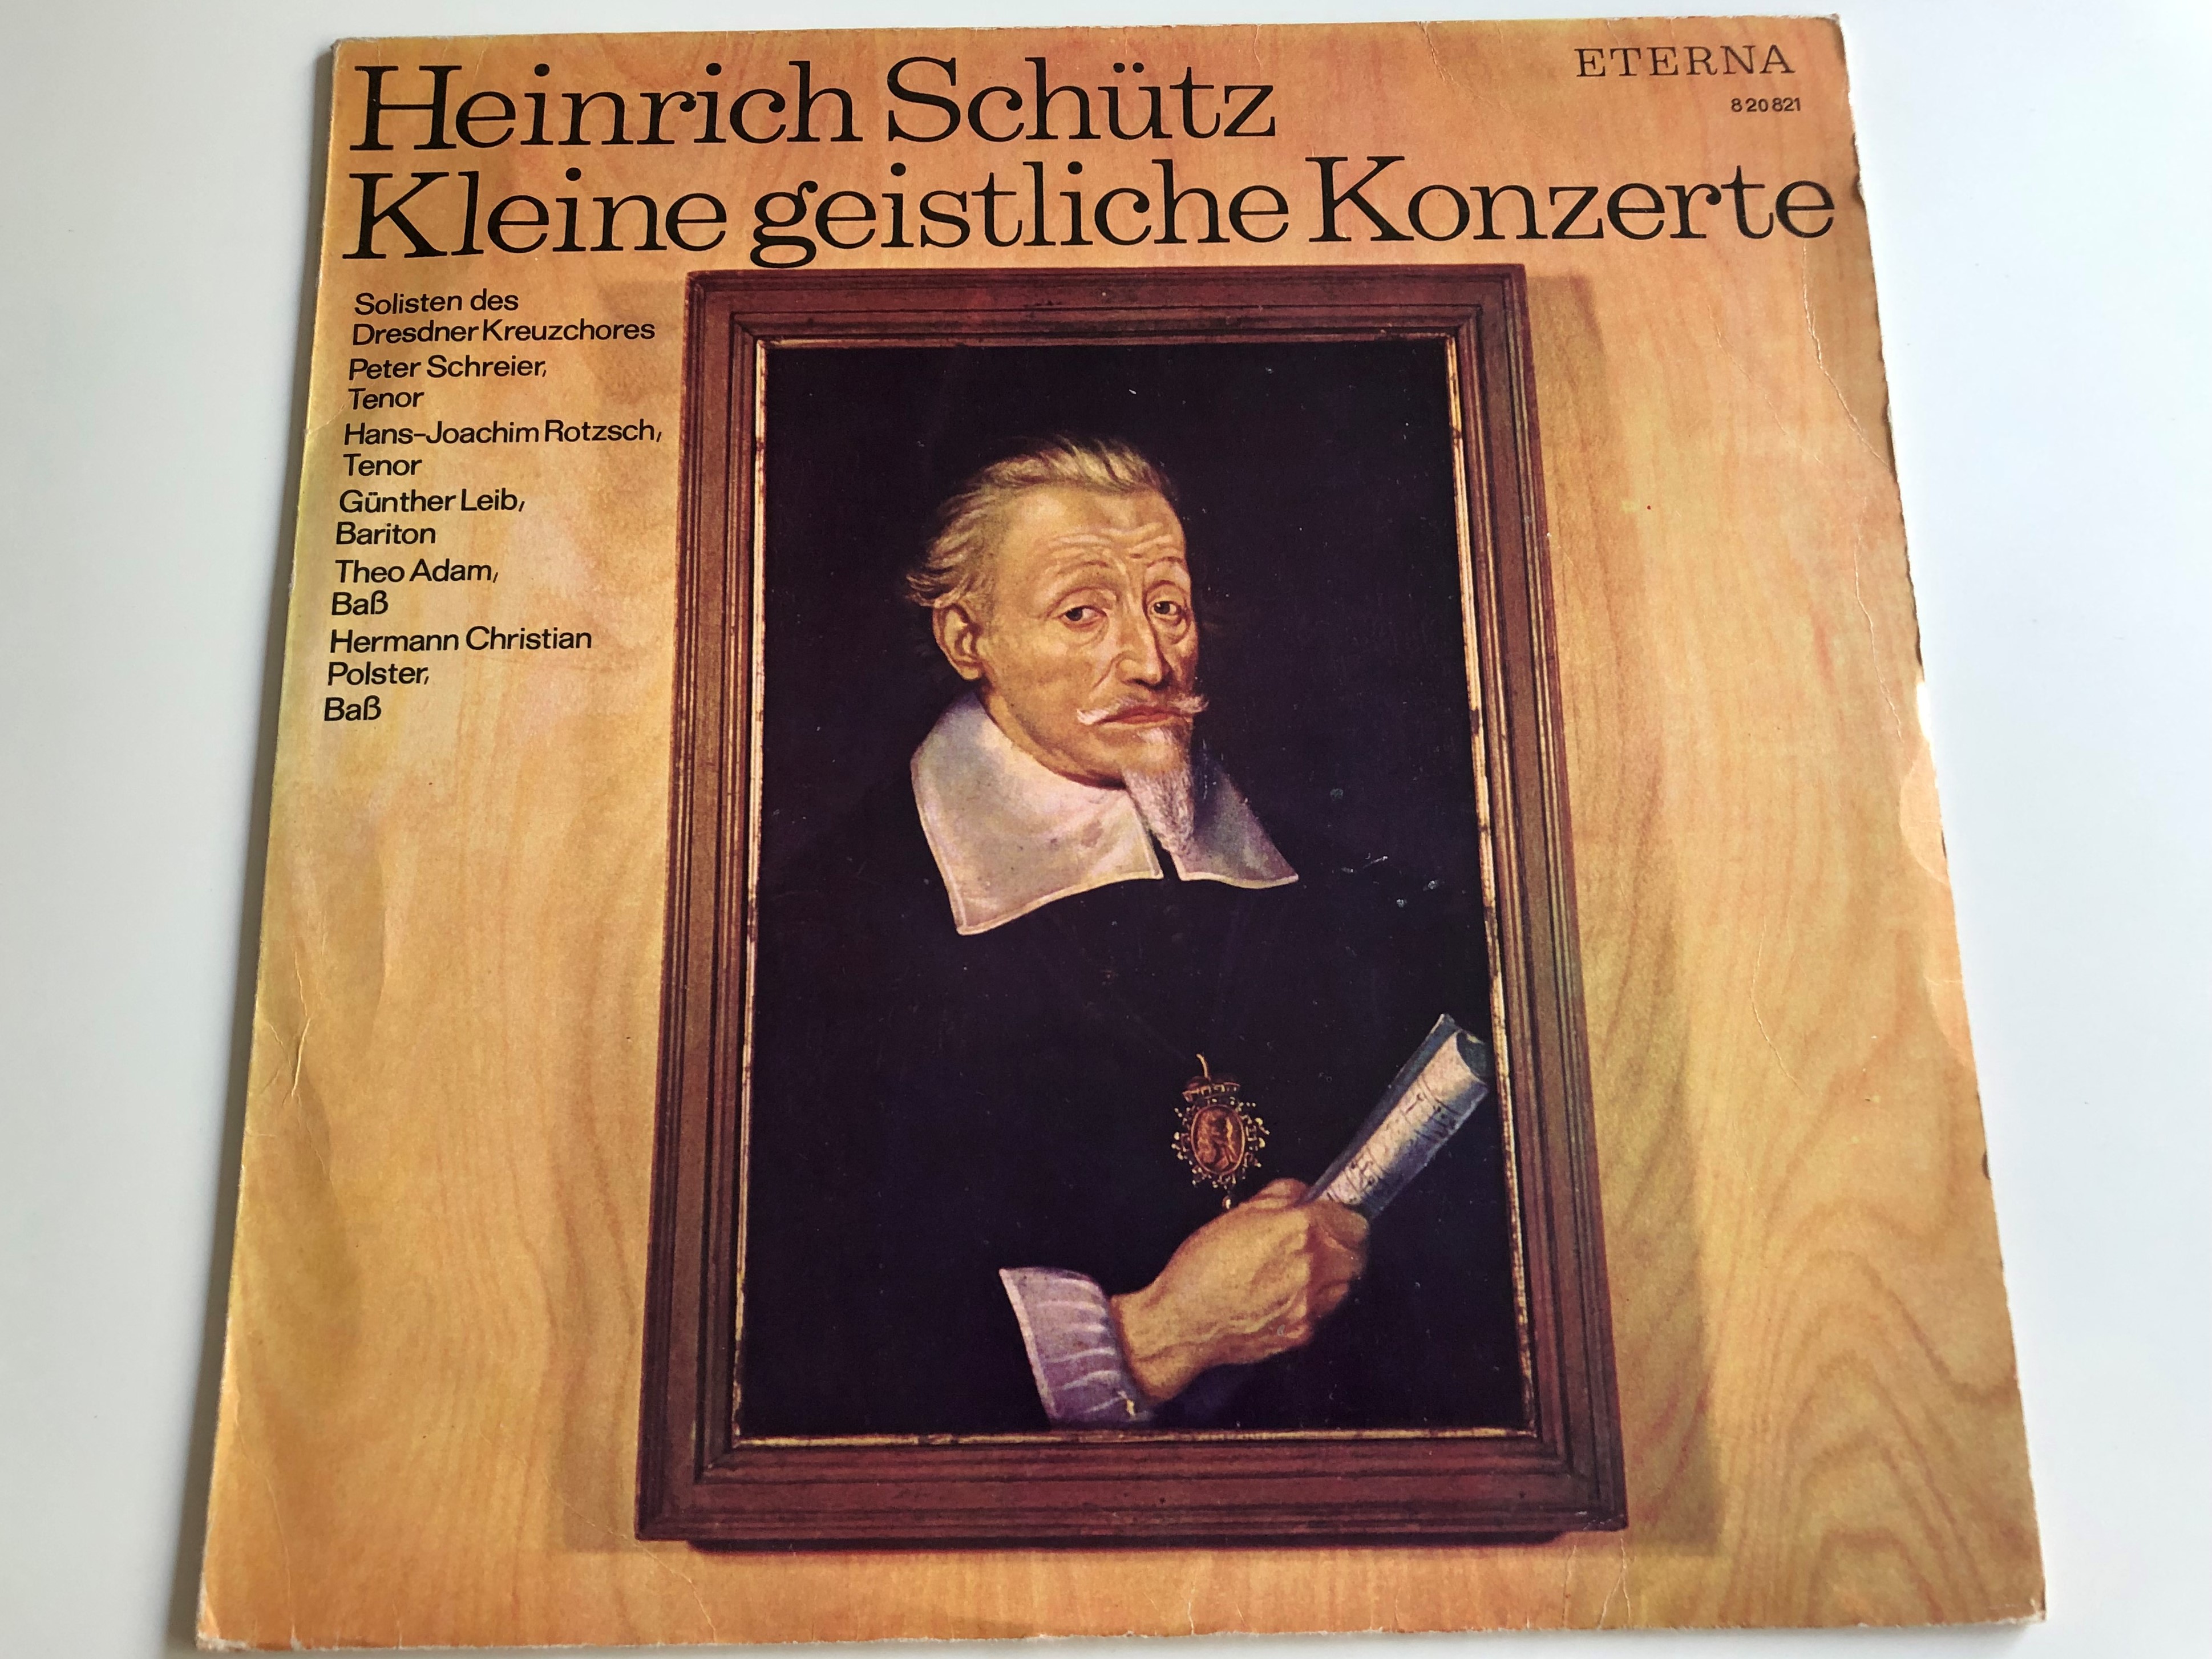 heinrich-sch-tz-kleine-geistliche-konzerte-solisten-des-dresdner-kreuzchores-peter-schreier-tenor-hans-joachim-rotzsch-gunther-leib-eterna-lp-820821-1-.jpg